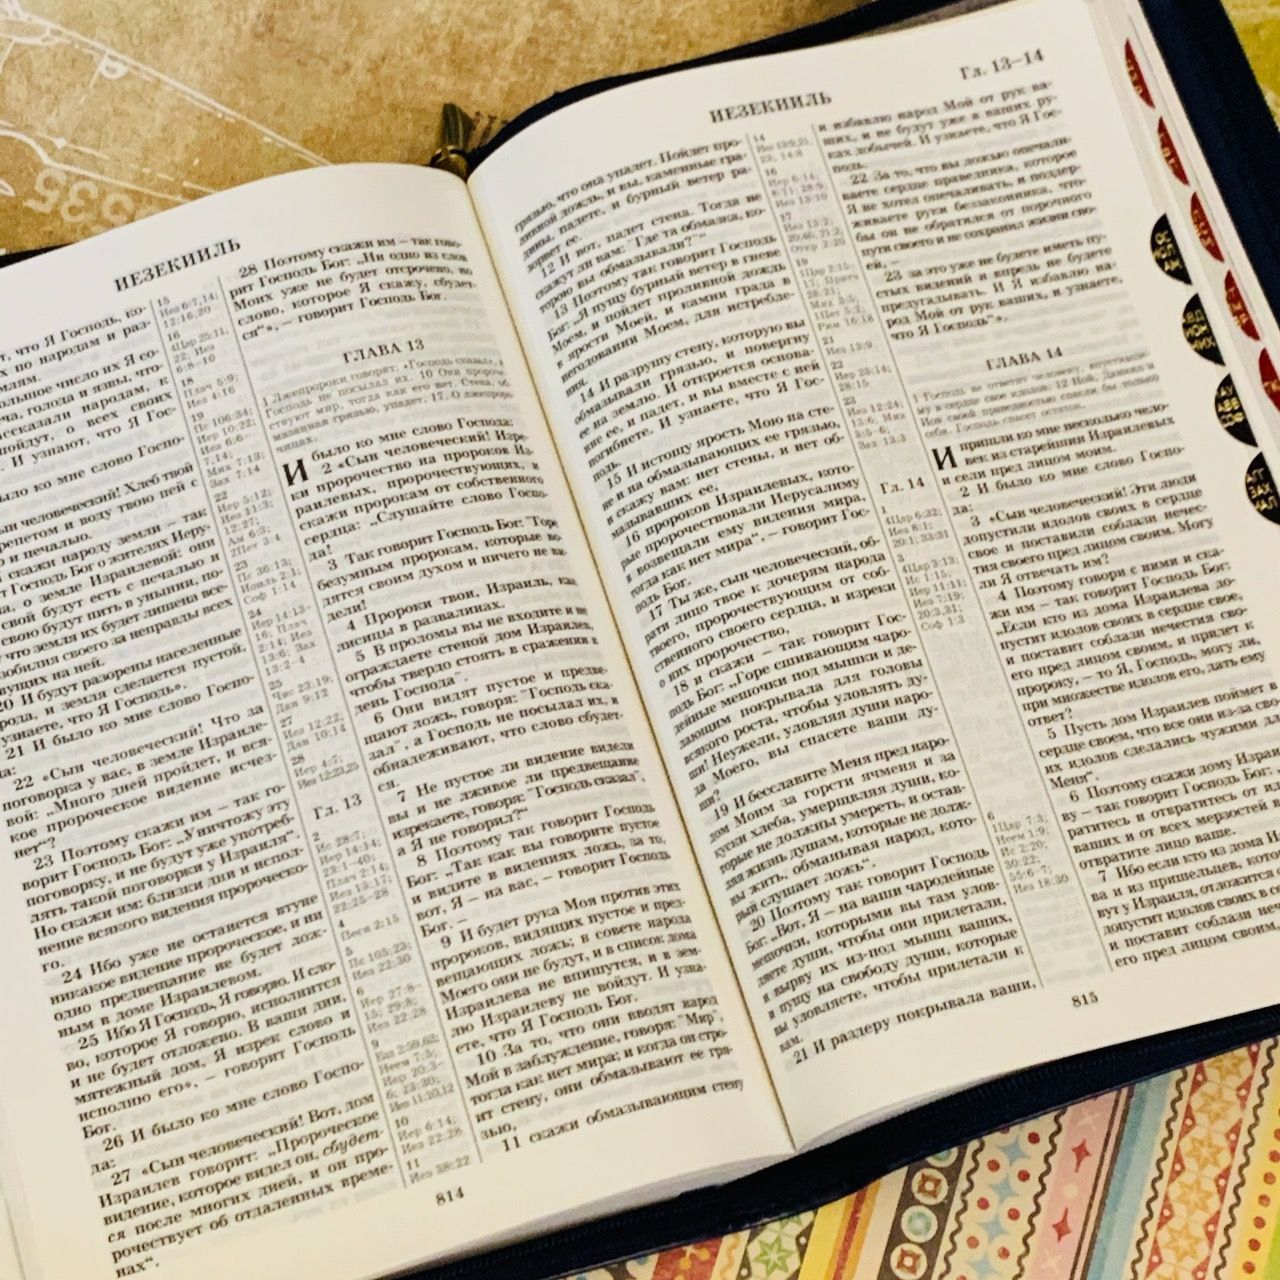 Библия 077zti формат, переплет из искусственной кожи на молнии с индексами, термо орнамент, цвет синий, большой формат, 180*260 мм, цветные карты, крупный шрифт